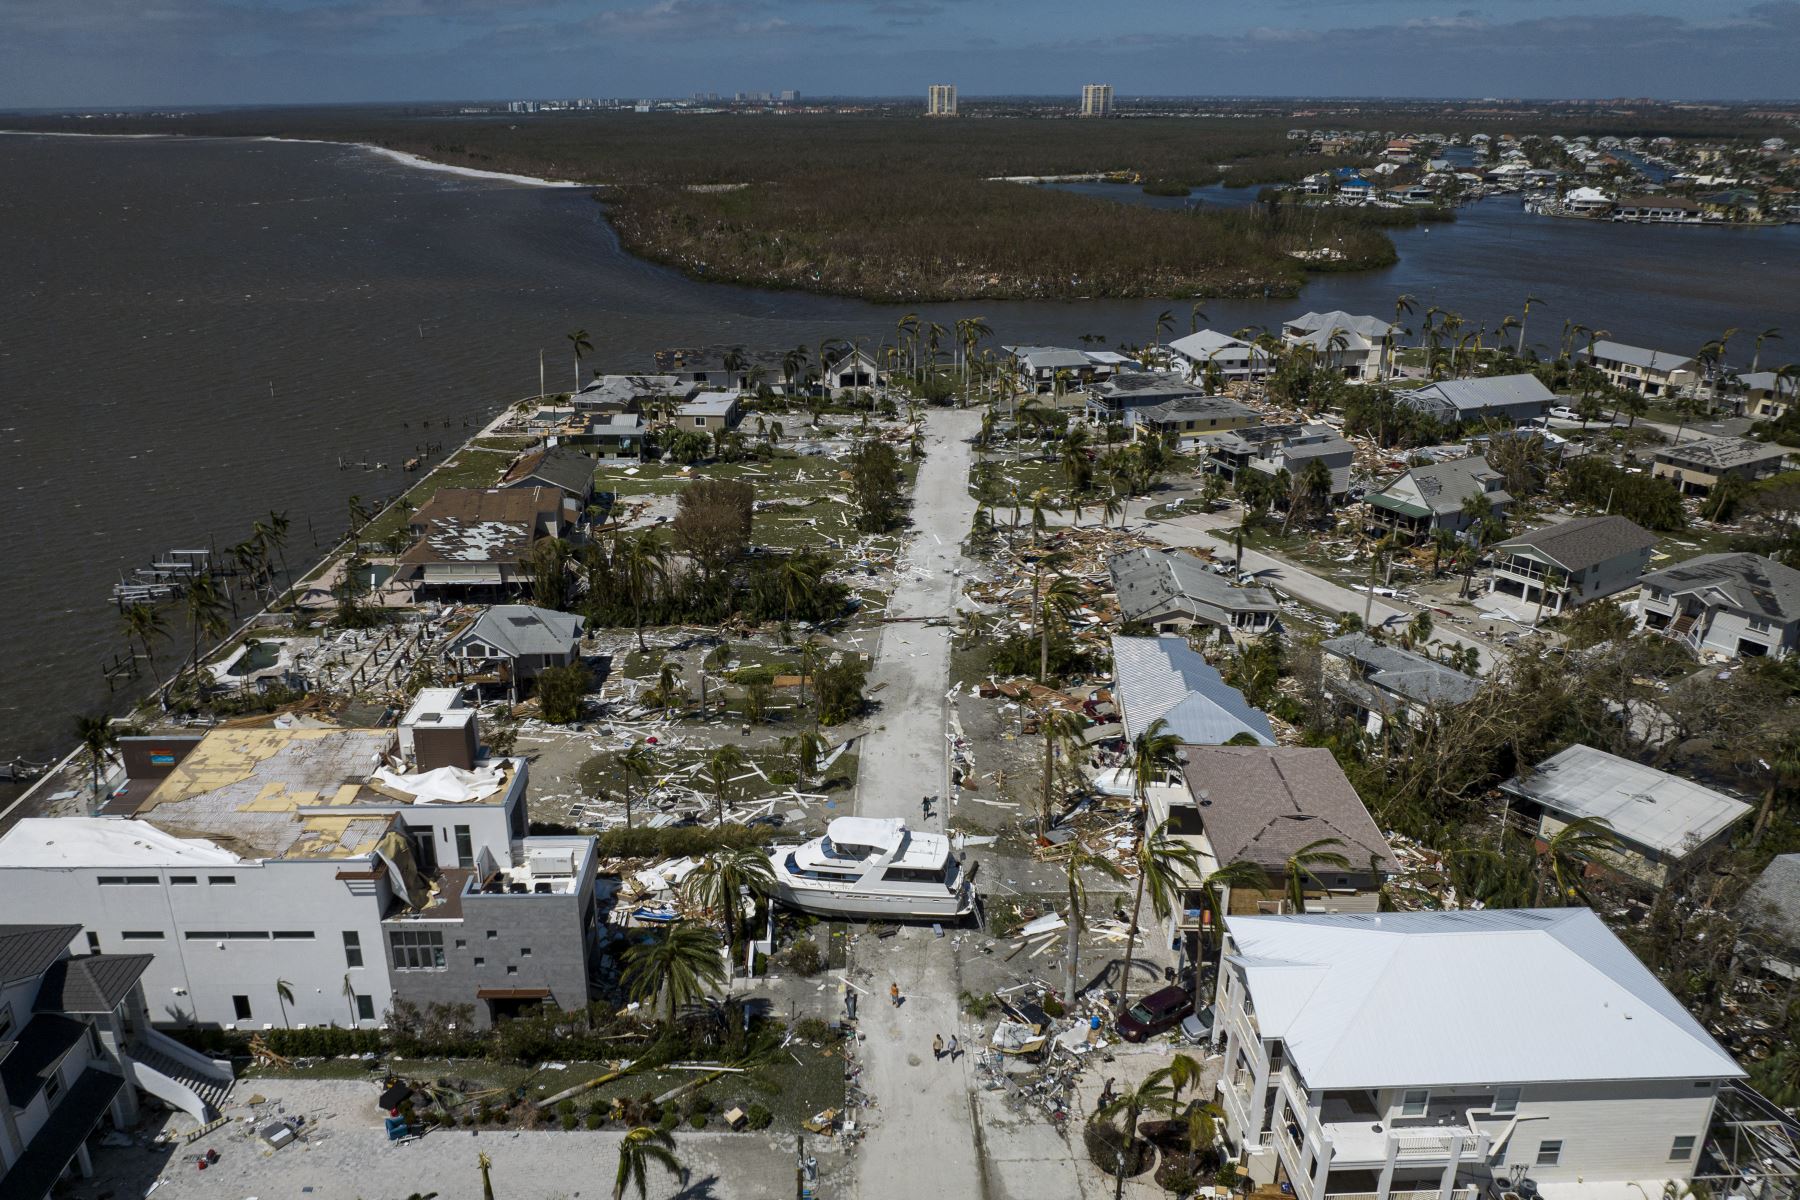 El huracán Ian dejó gran parte de la costa suroeste de Florida en la oscuridad la madrugada del jueves, provocando inundaciones "catastróficas" que dejaron a los funcionarios preparando una gran respuesta de emergencia a una tormenta de rara intensidad. Foto: AFP